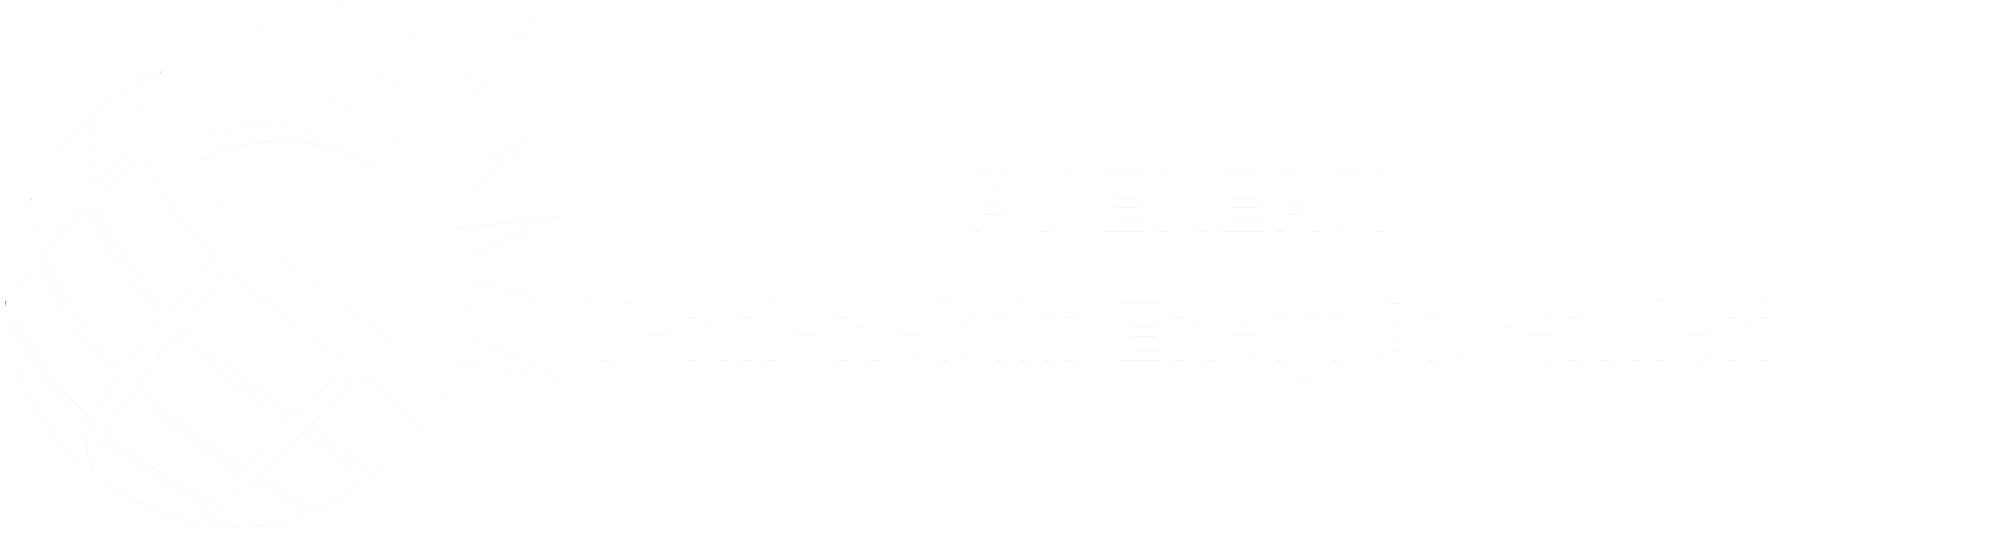 Pv Enerji | Mühendislik Hizmetleri